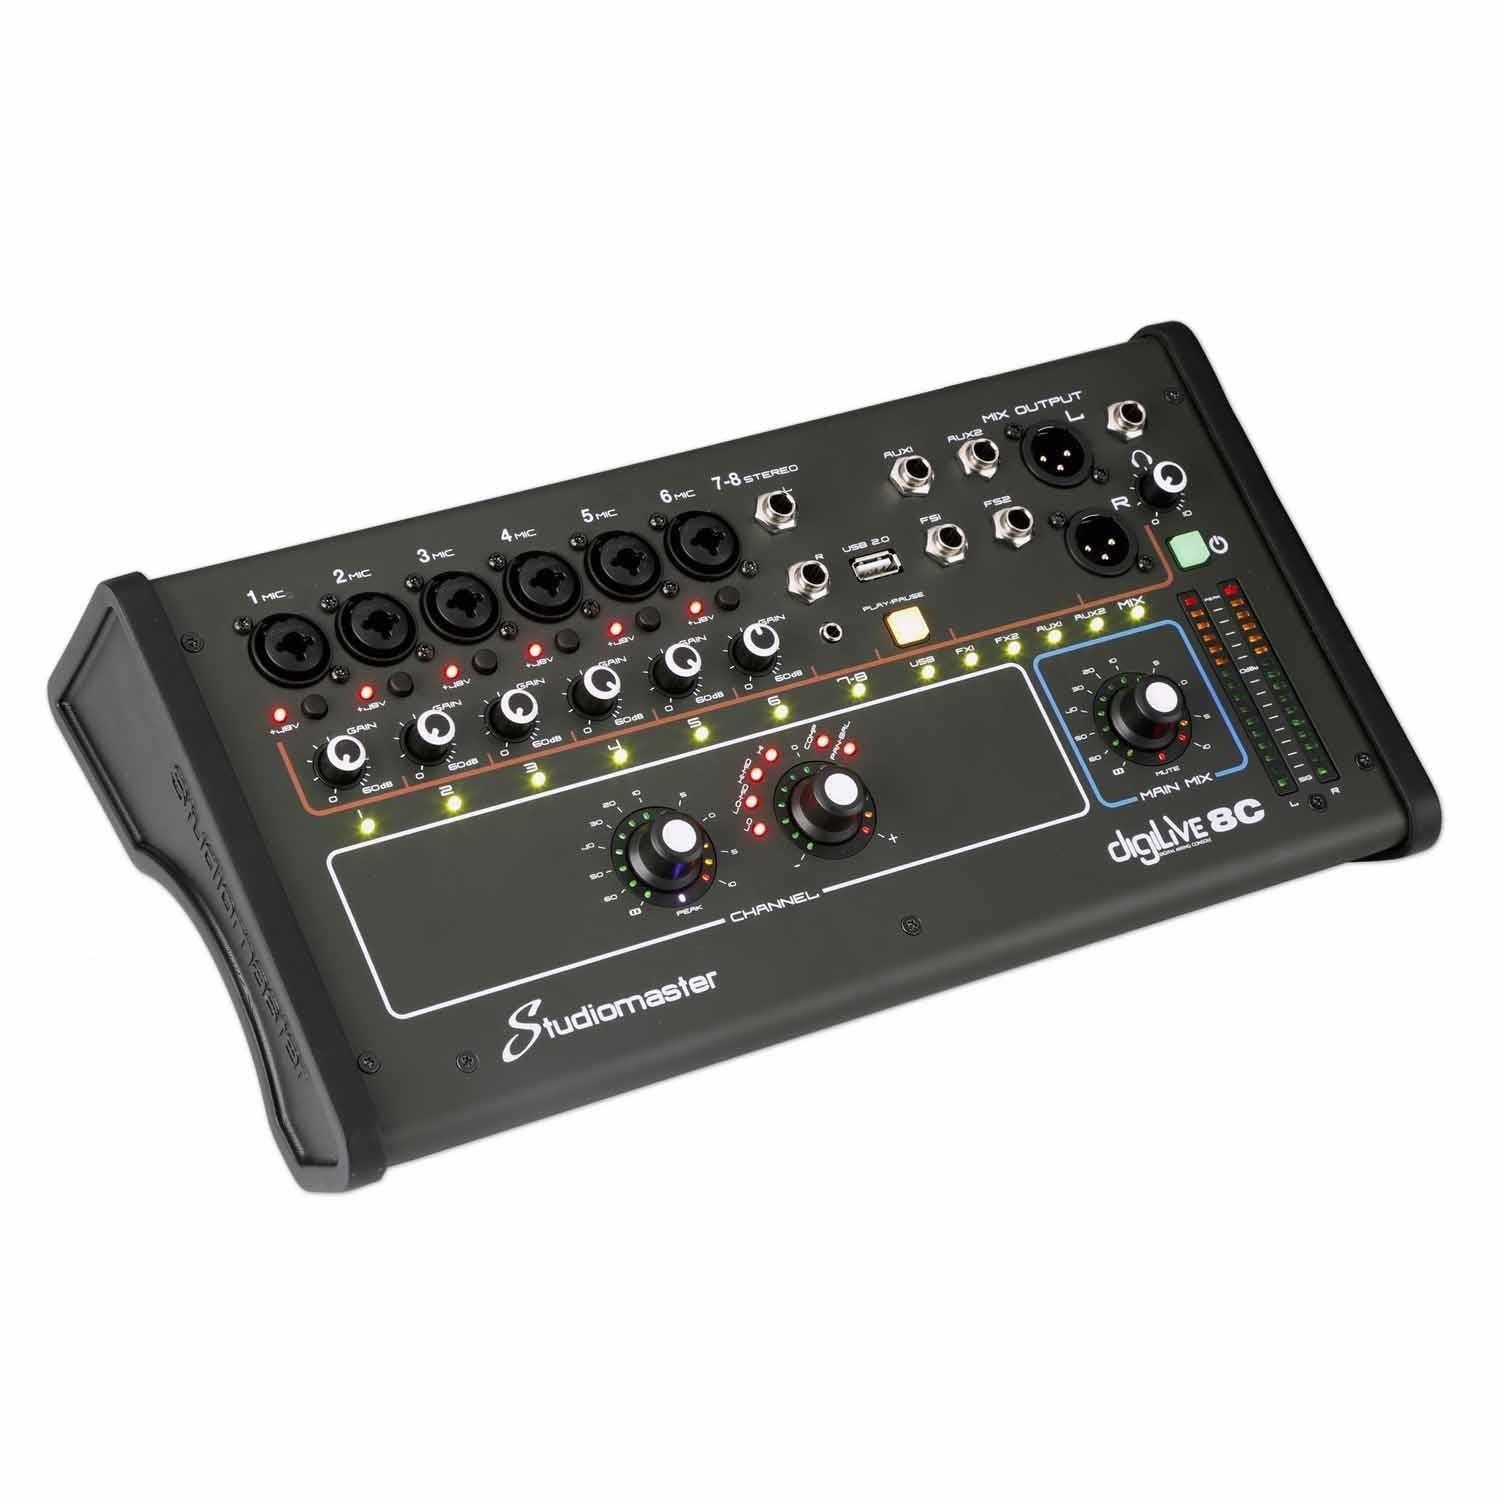 Studiomaster DIGILIVE8C 8 input Compact Digital Mixer - DY Pro Audio